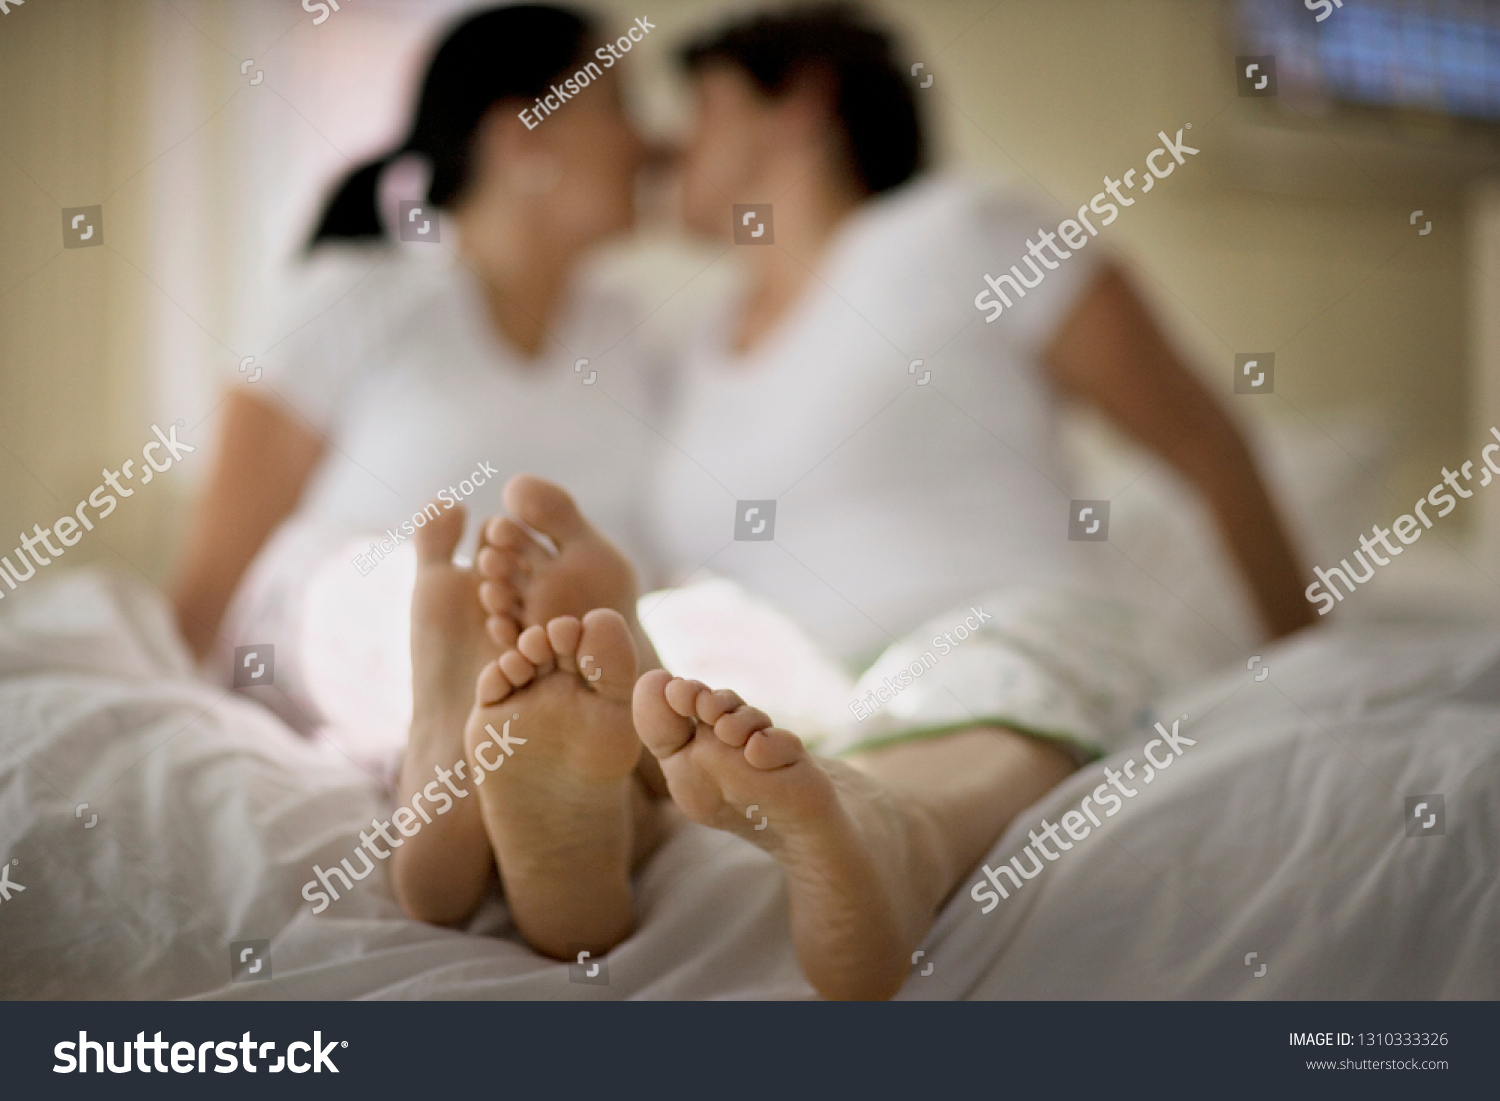 Lesbian Feet Pics